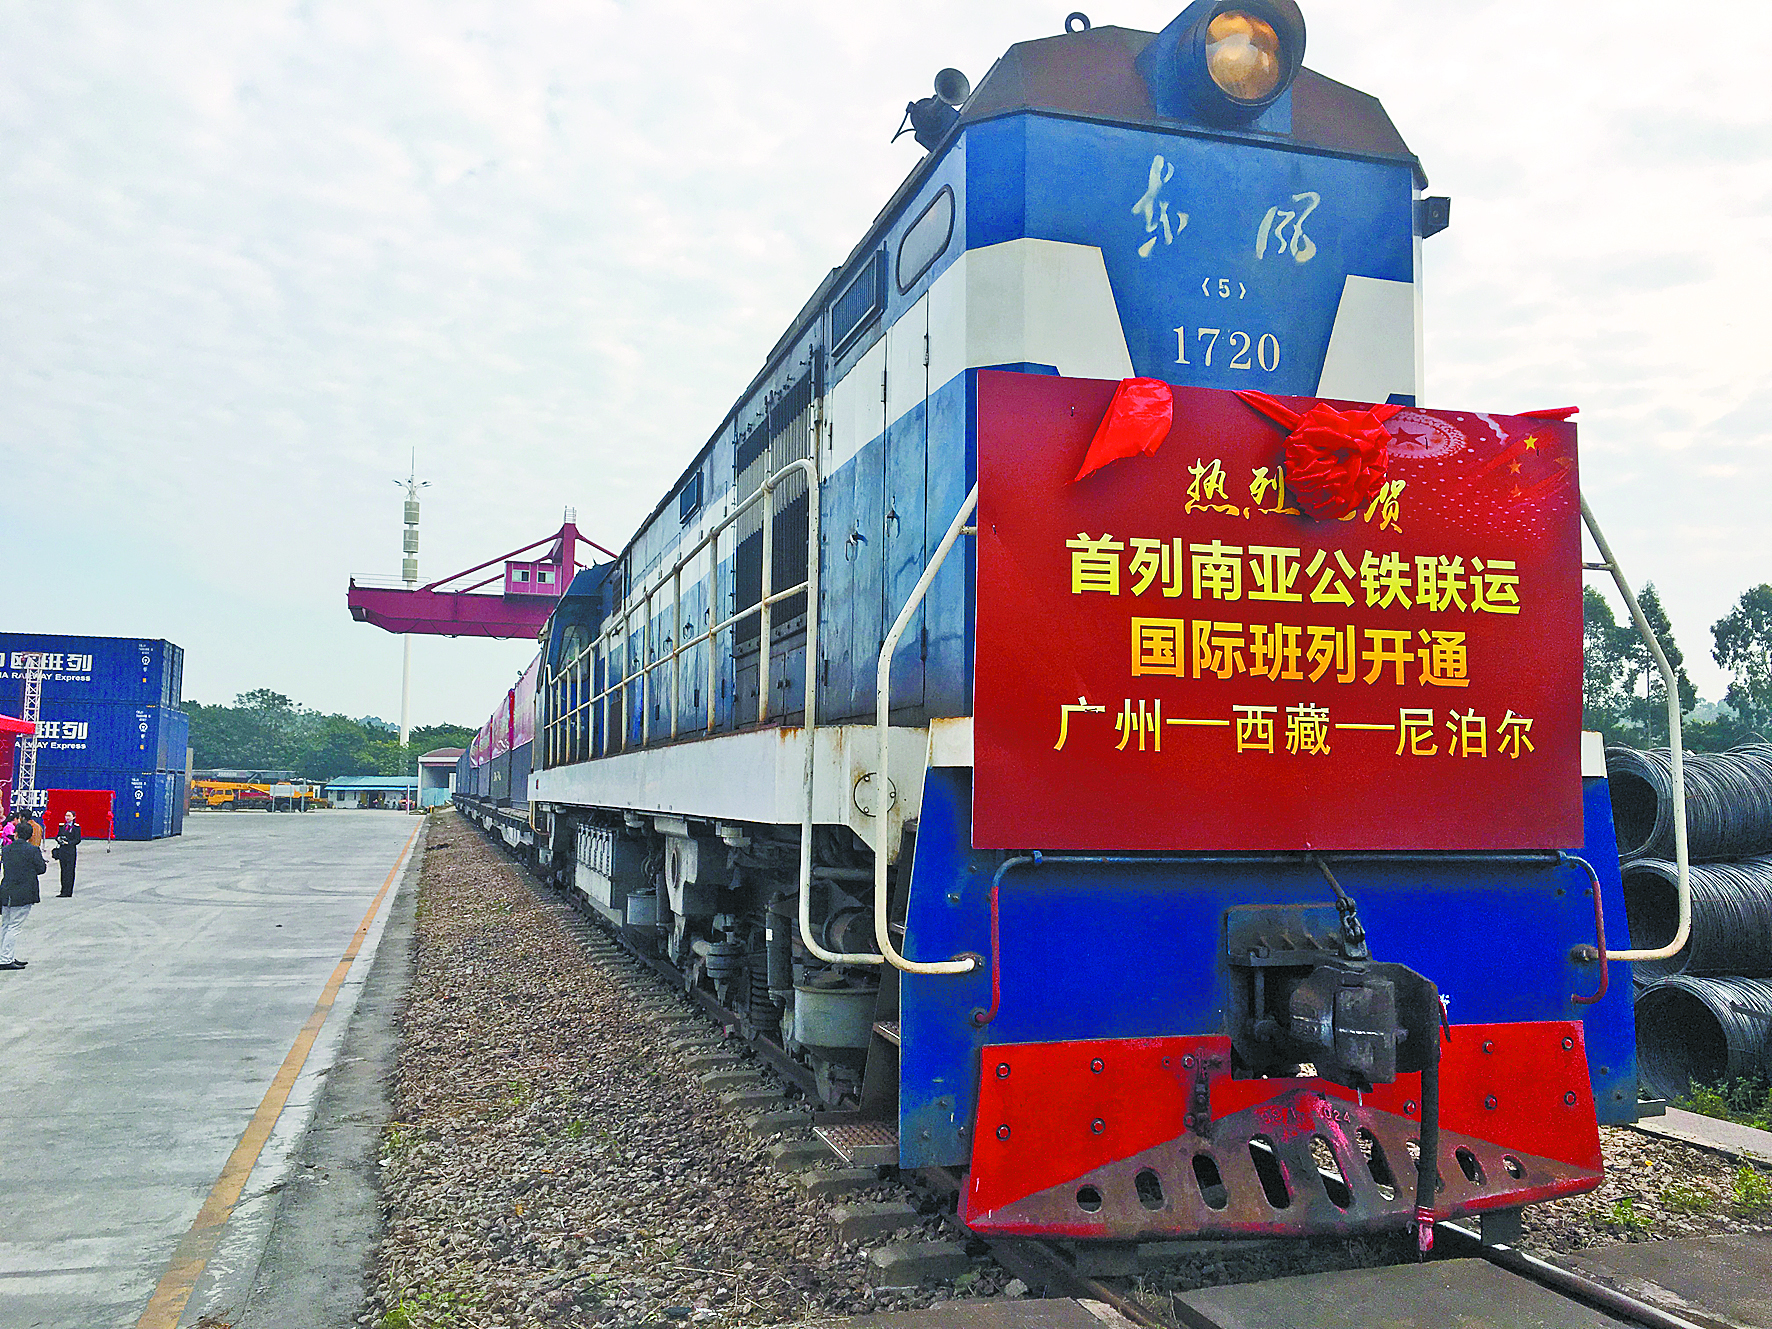 广州—南亚国际货运班列开通